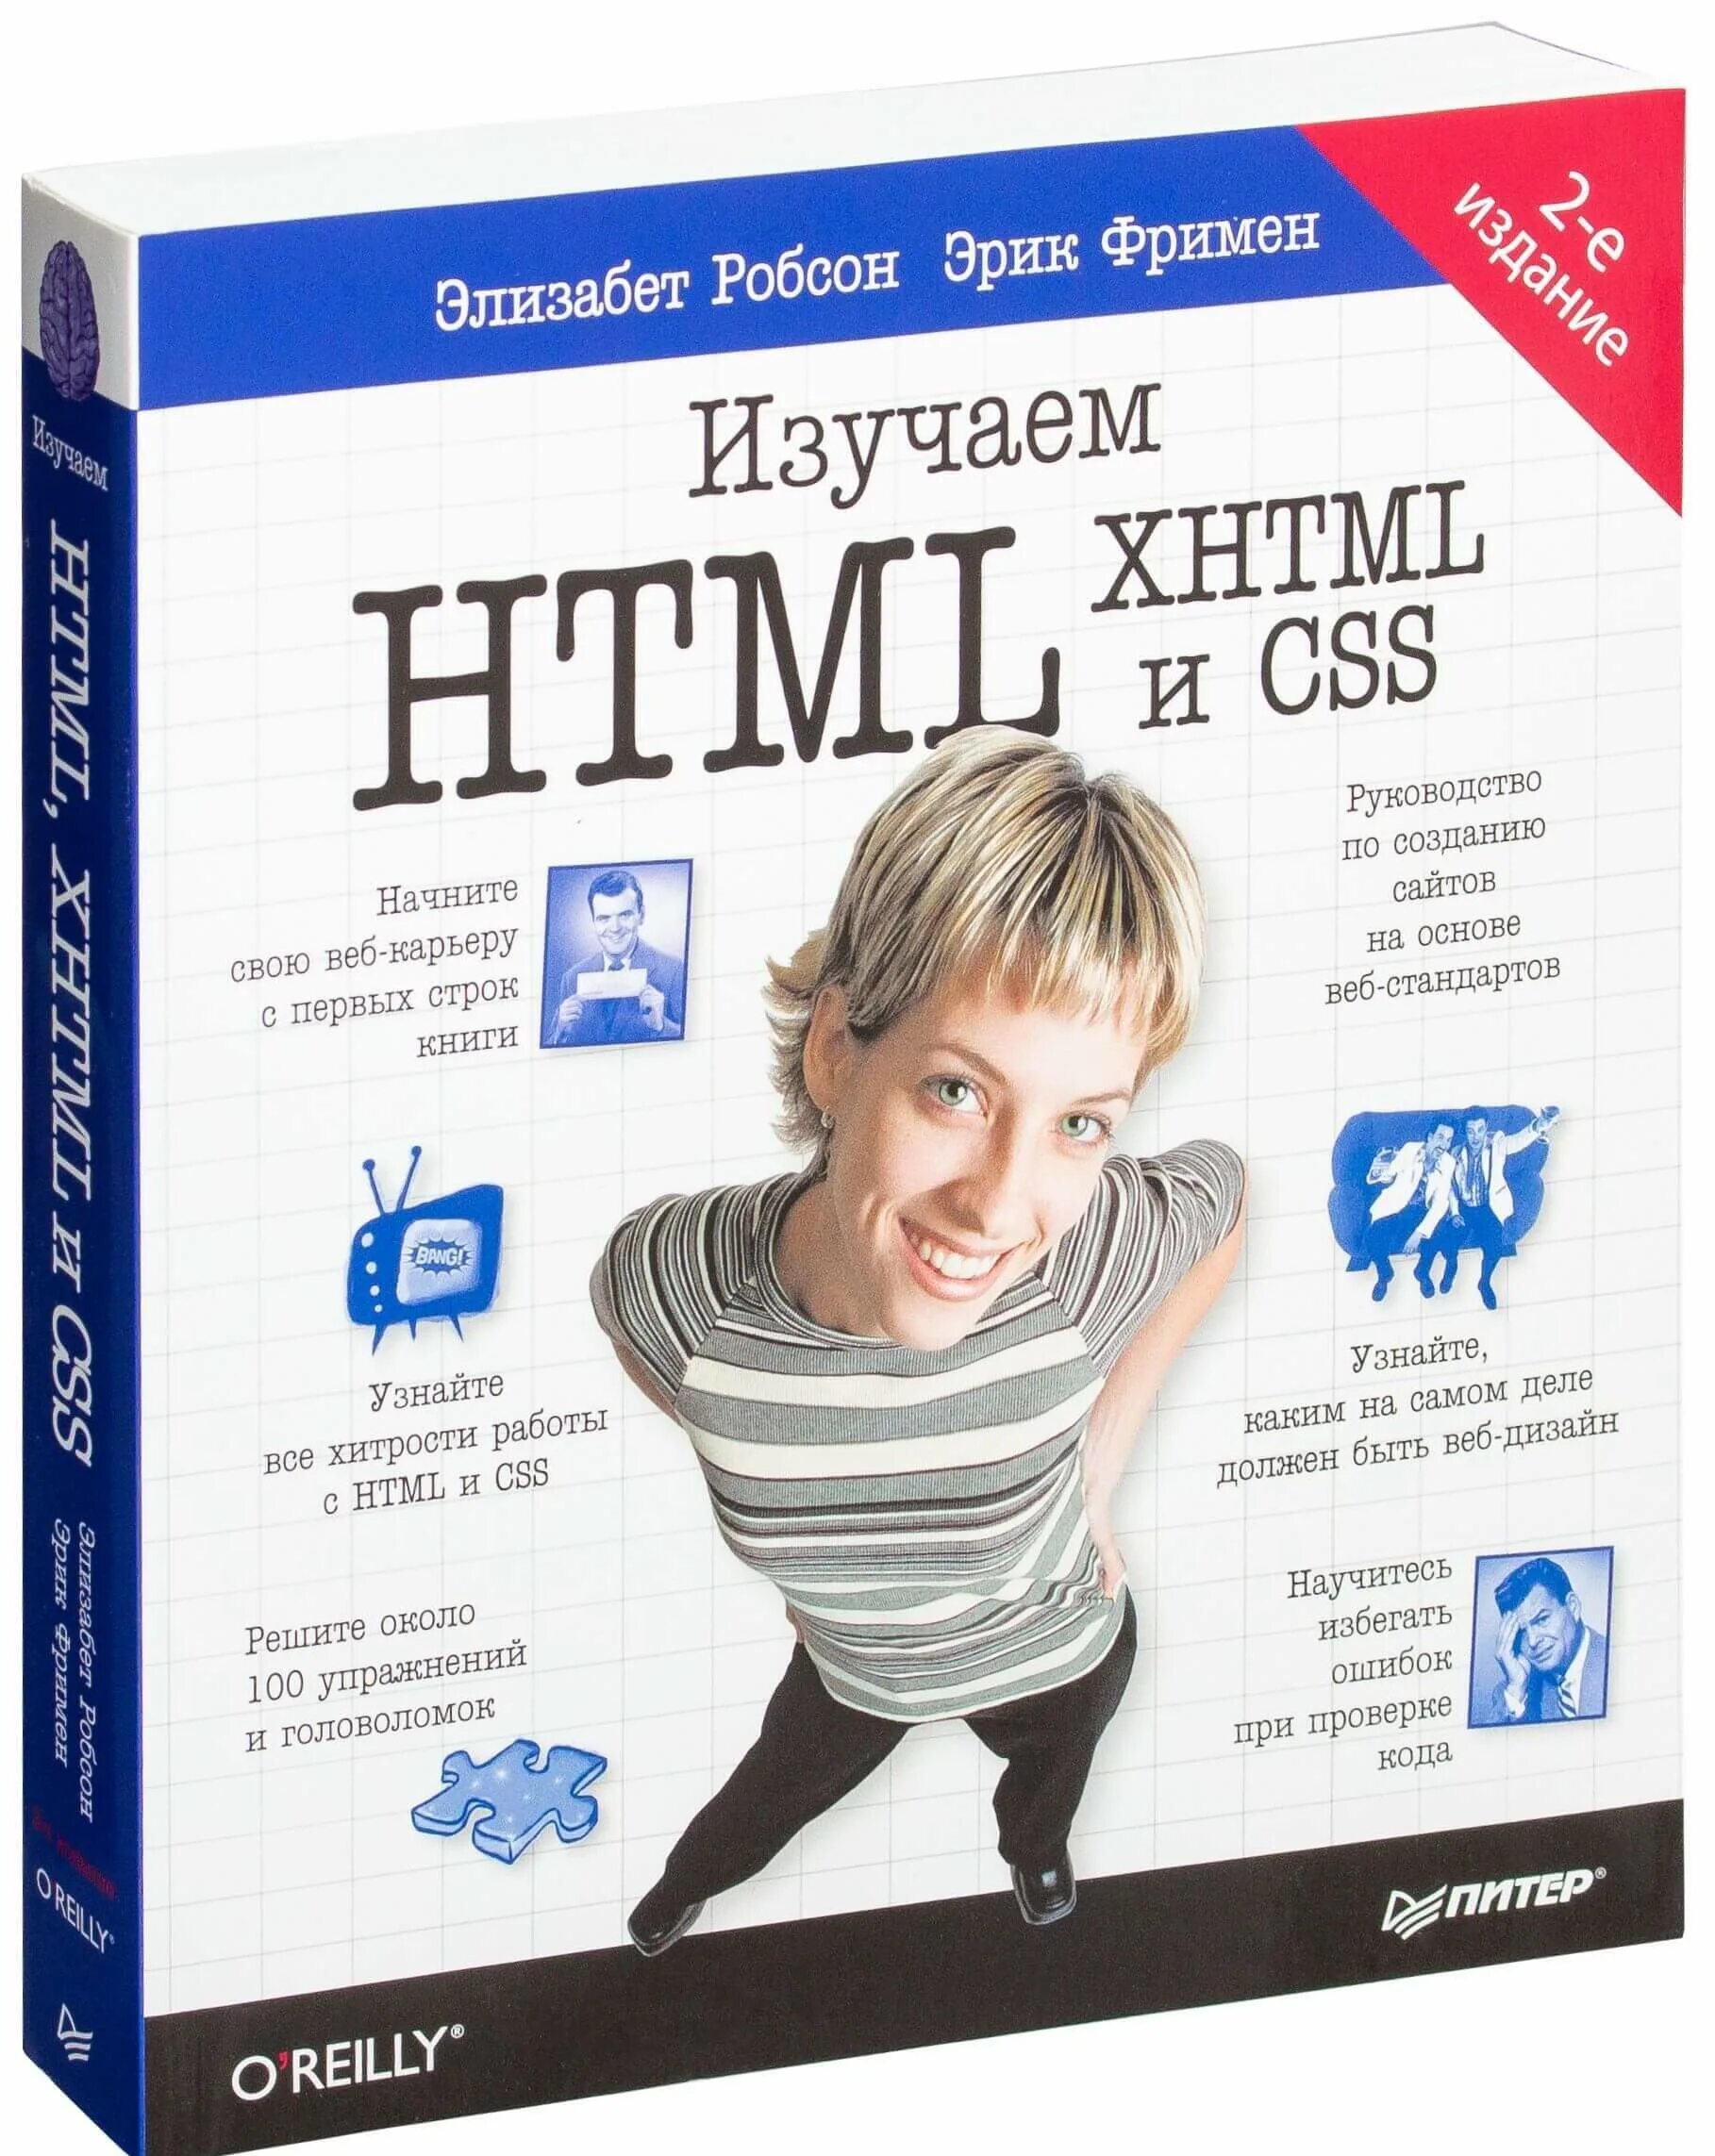 Робсон э., Фримен э. “изучаем html, XHTML И CSS”. Книги по html и CSS.